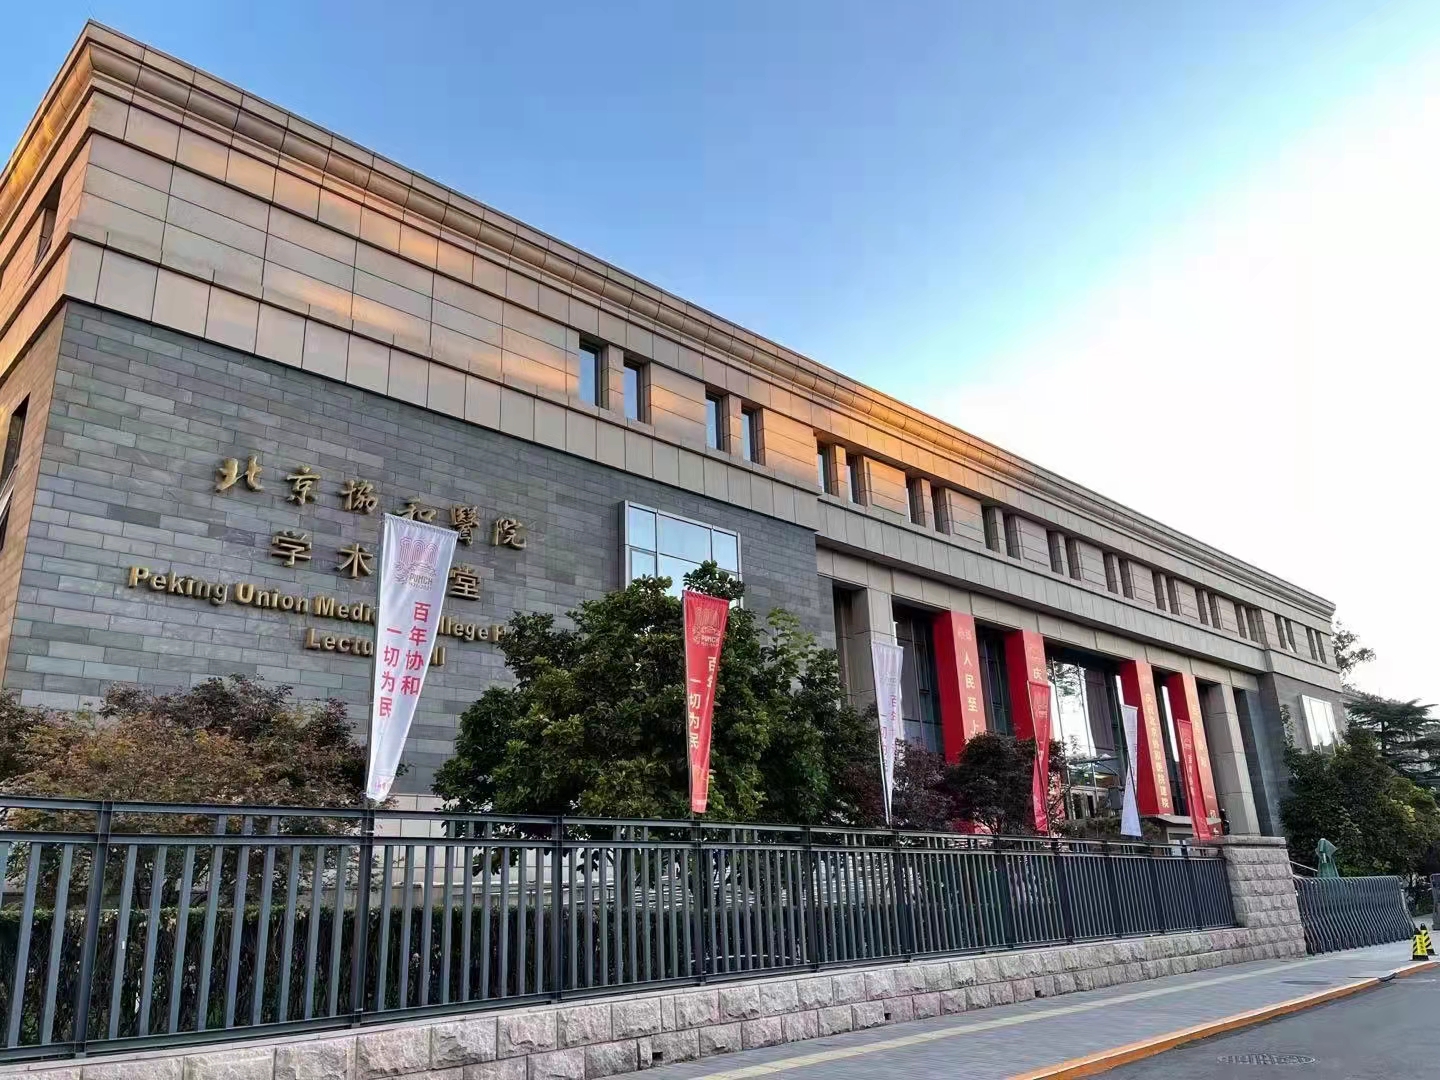 北京协和医院百年院庆在尚武会议拍摄中取得圆满